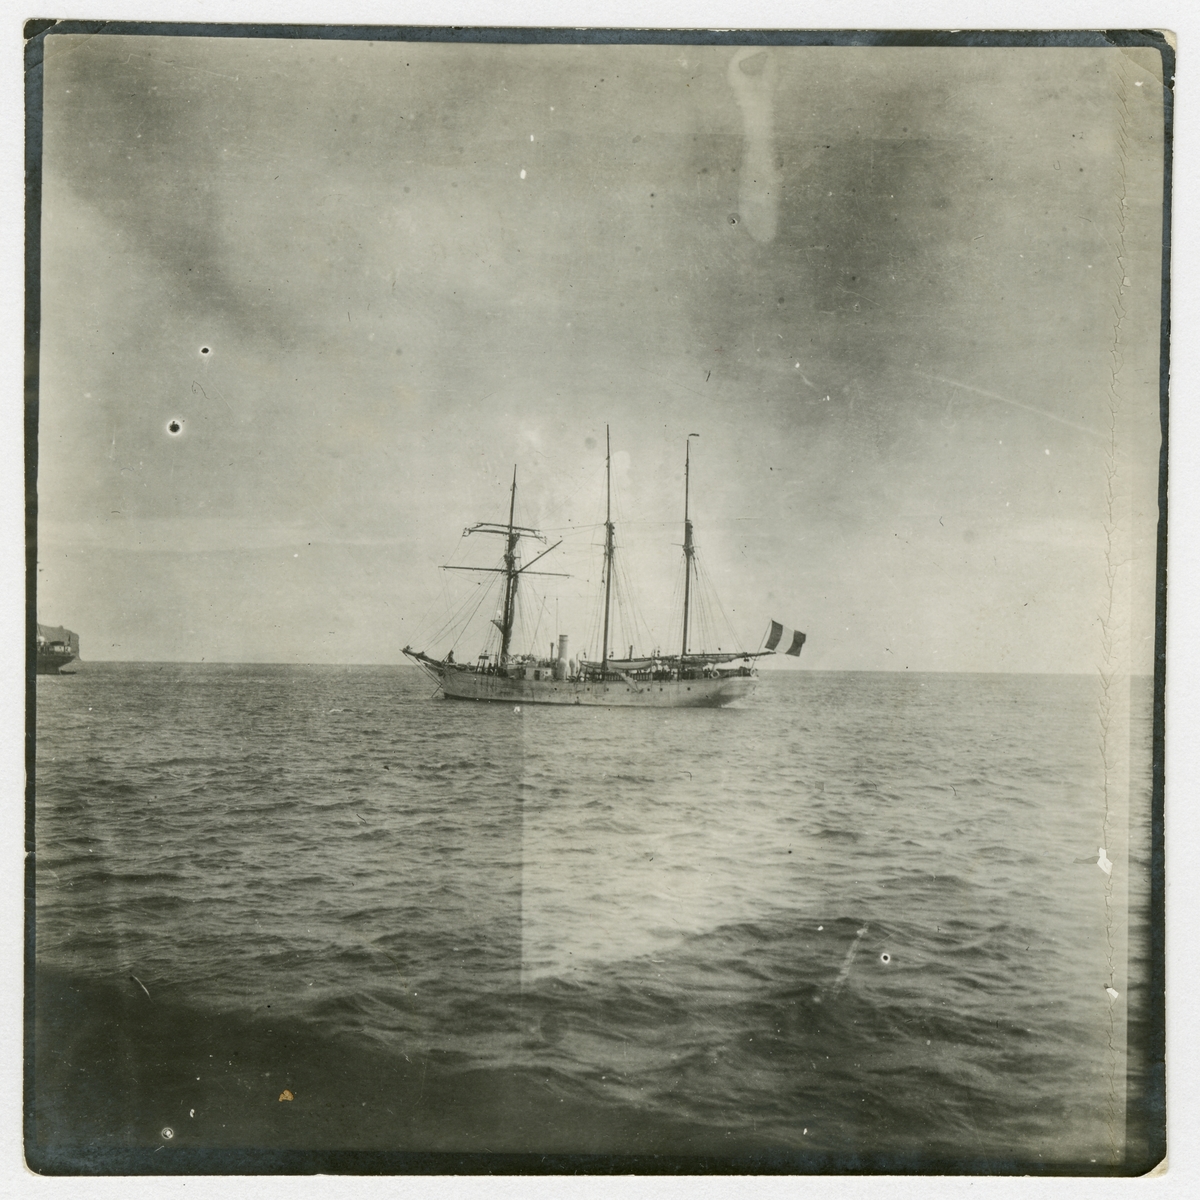 Den franska undsättningsexpeditionens fartyg, Le Francais, i Funchal på Madeira.